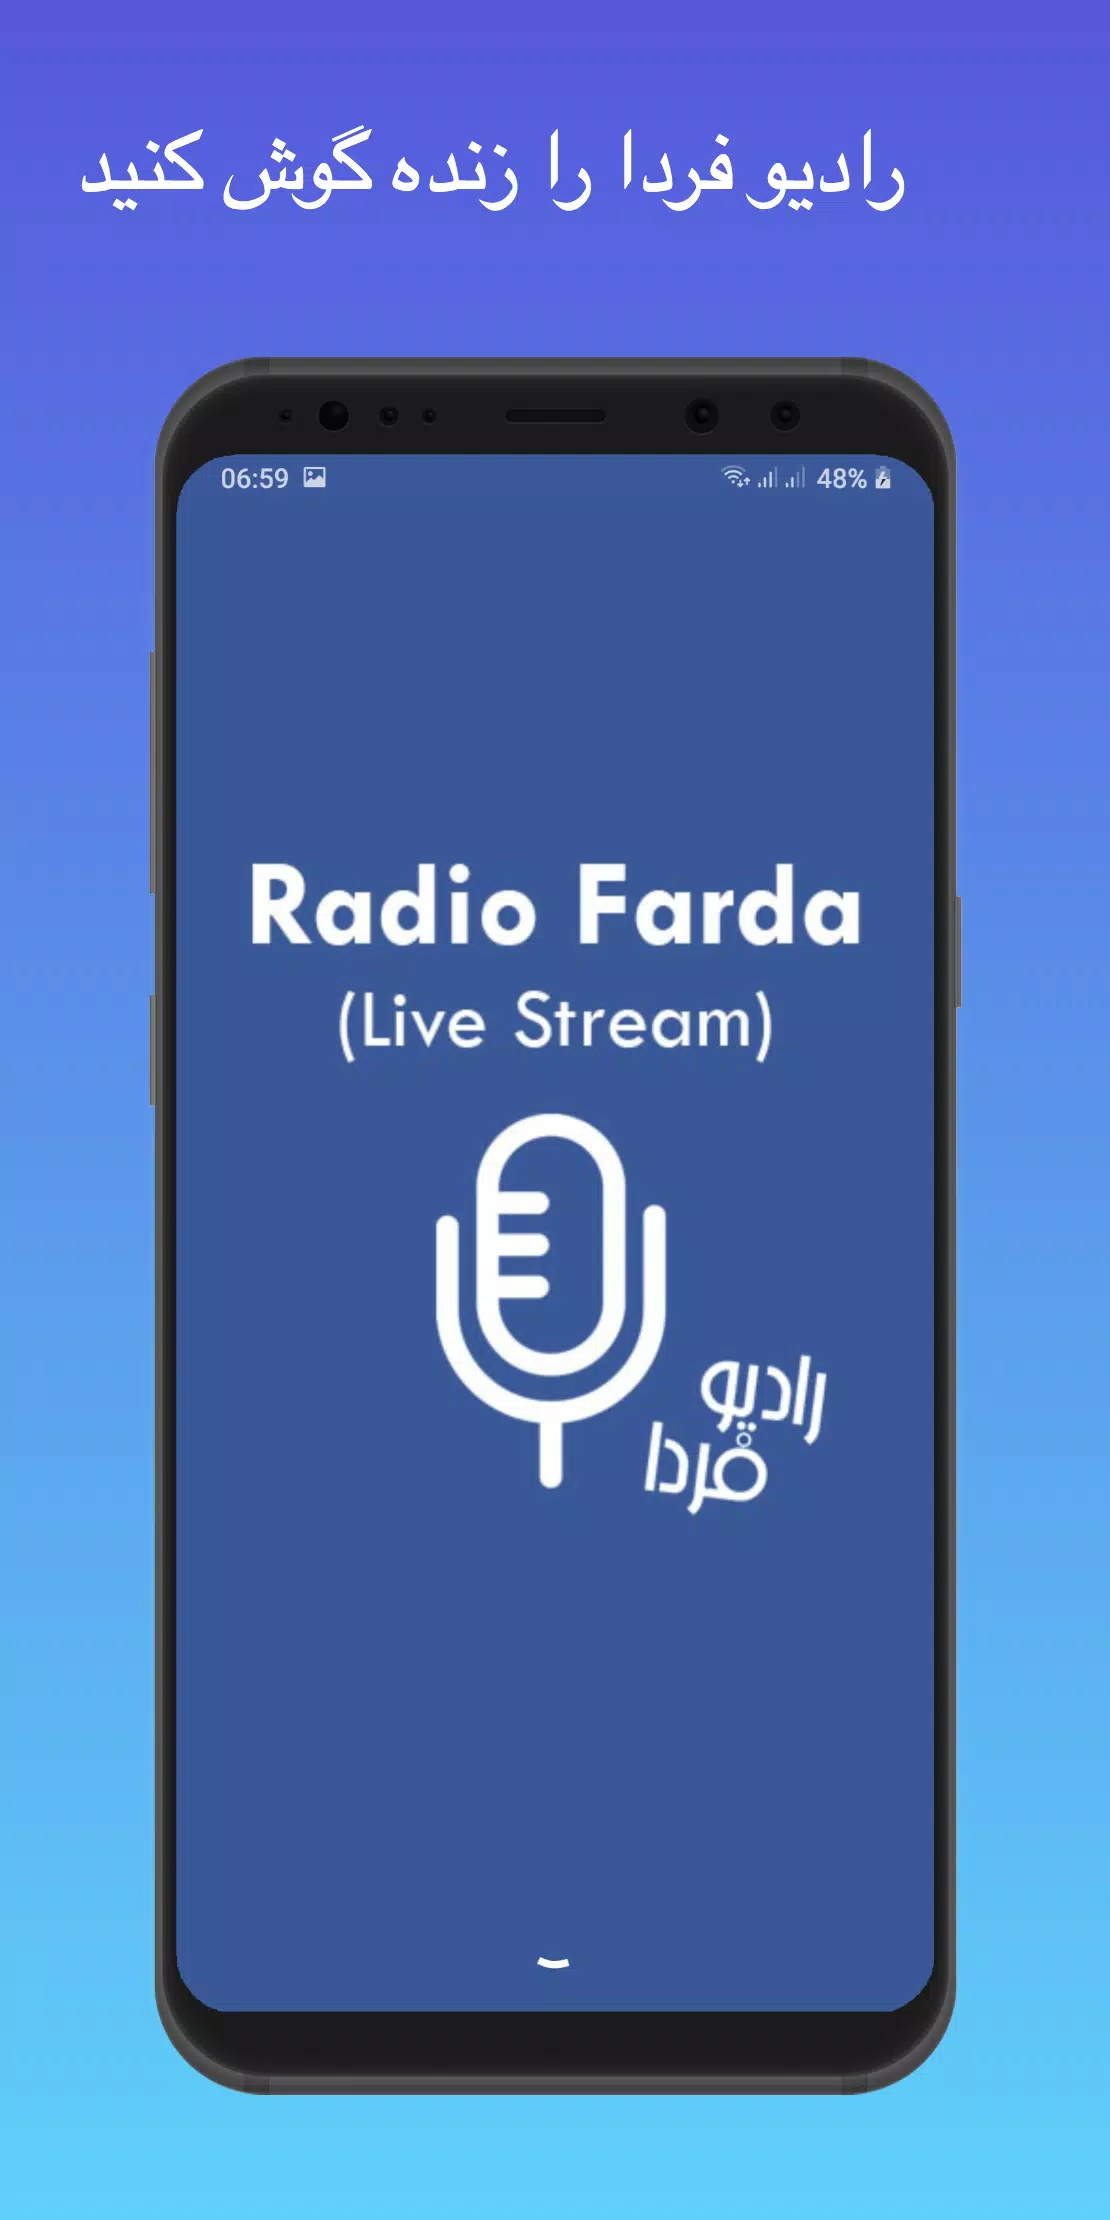 رادیو فردا پخش زنده - Radio Farda Live Stream‎ for Android - APK Download